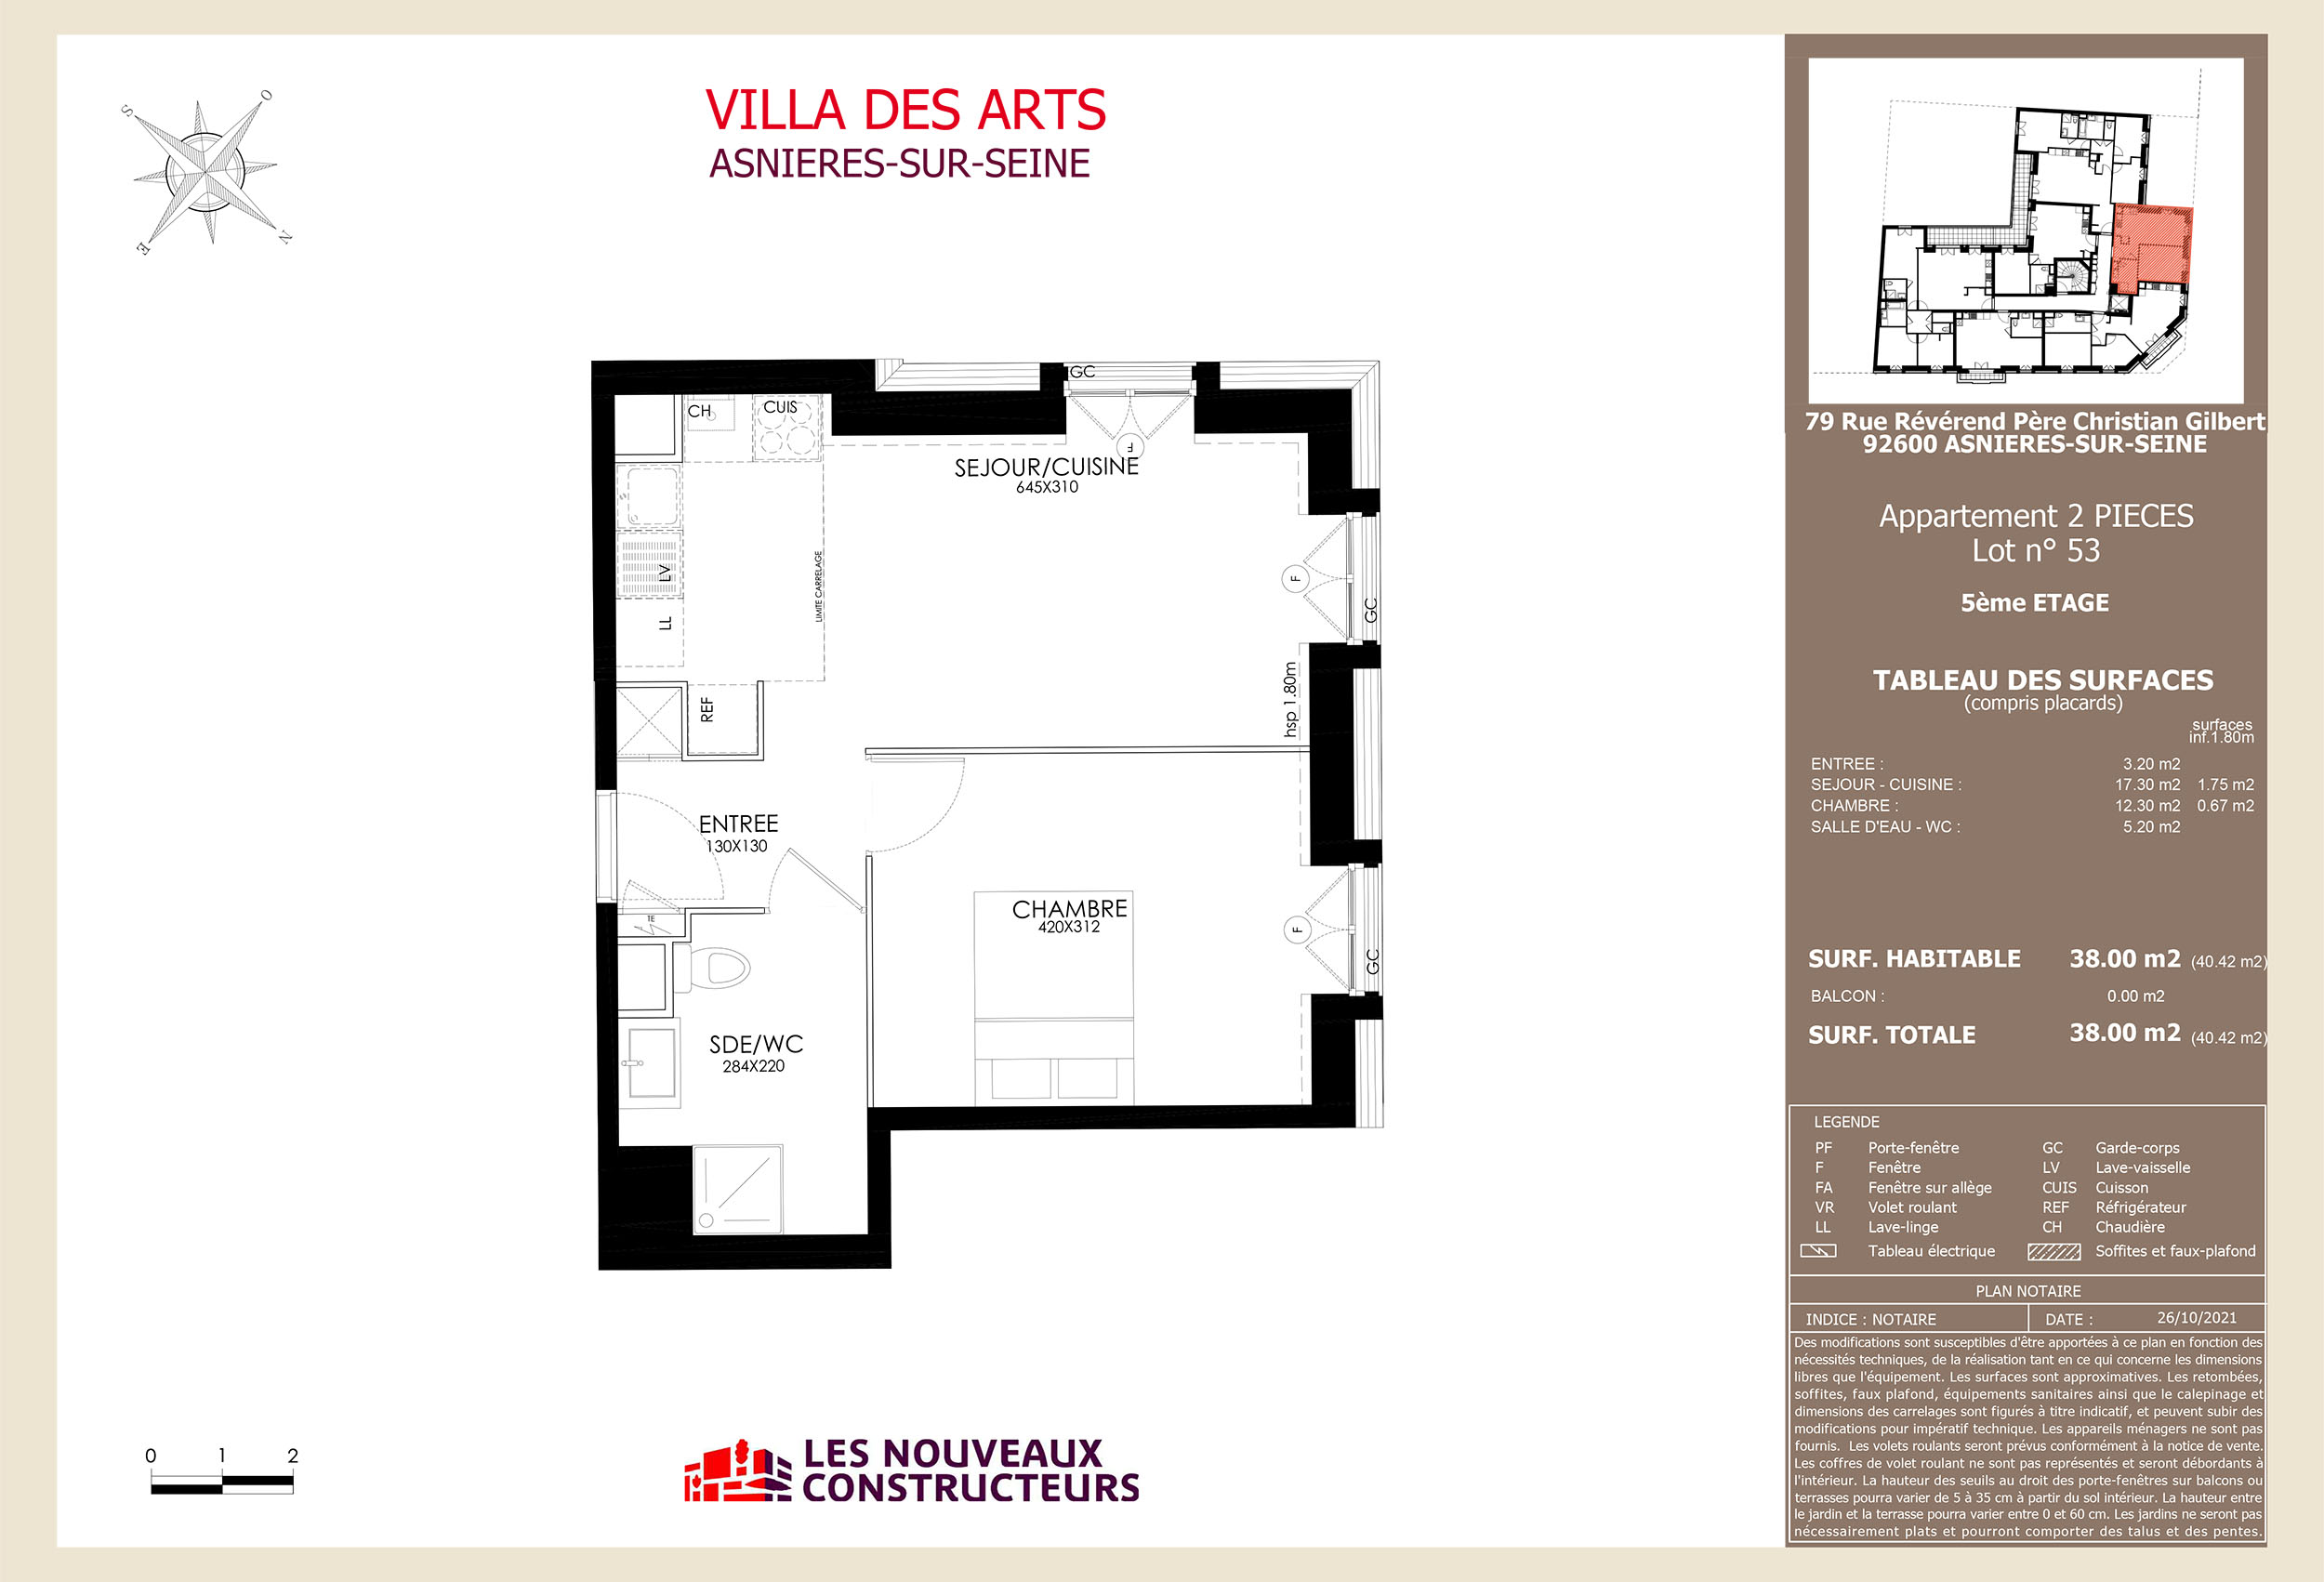 Asnieres - Villa Des Arts - Lot 53